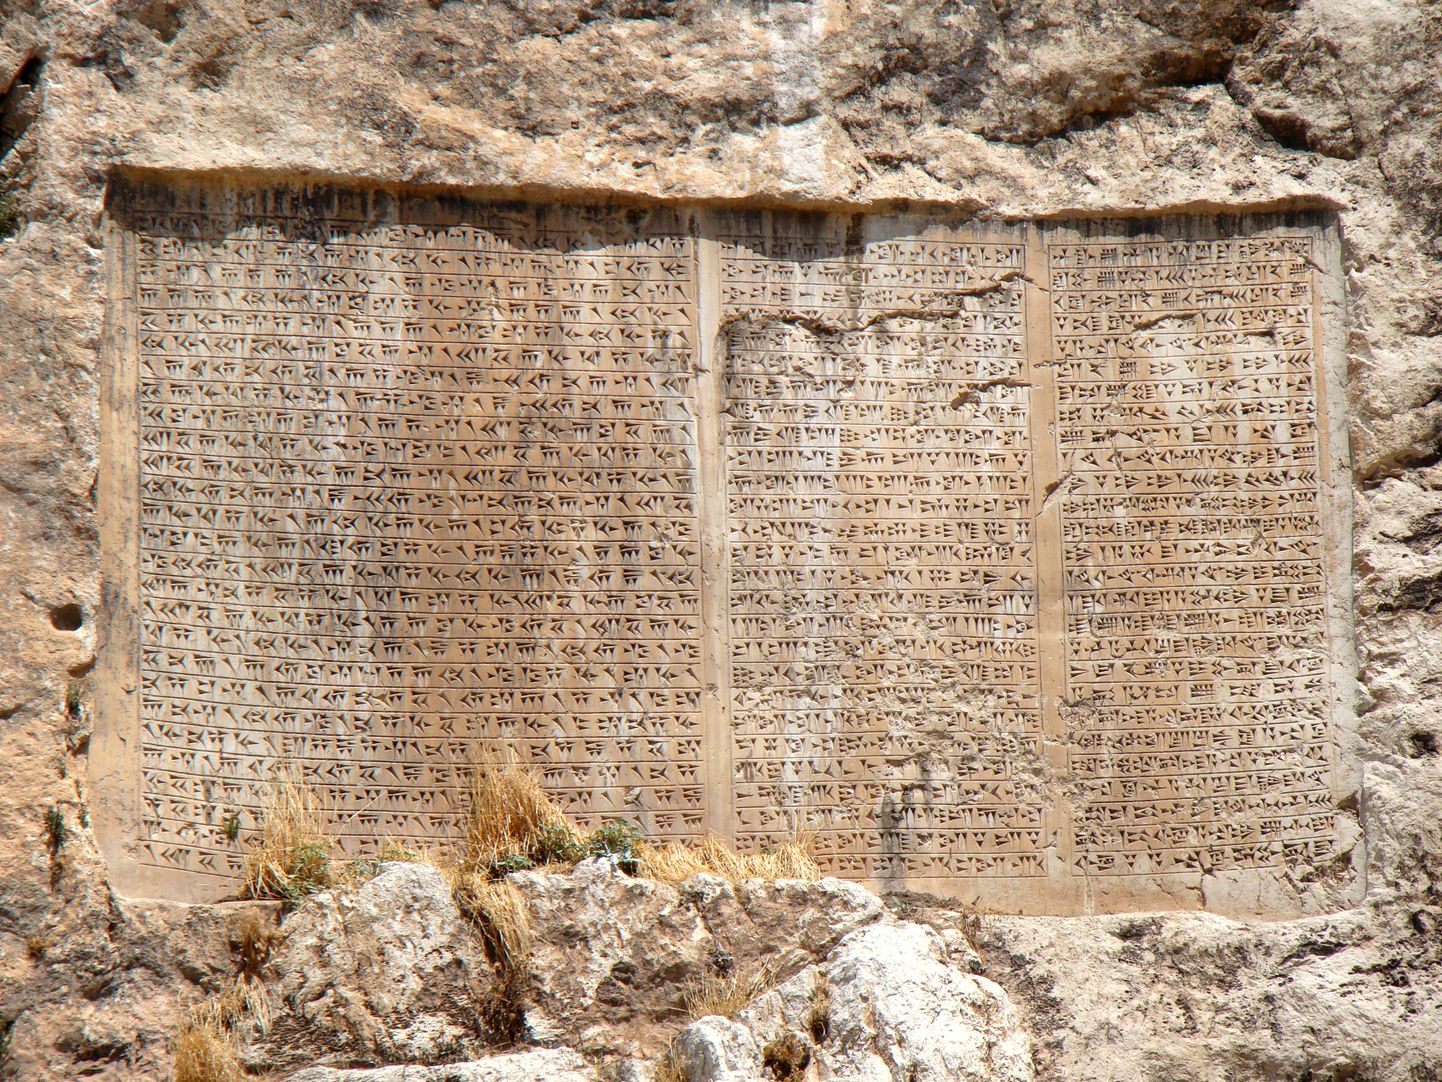 VANIM: Kõige varasem teadaolev kirjalik tekst on tehtud kiilkirjas. Kiilkiri oli kasutusel Mesopotaamias, selle moodustasid mõistemärgid, mis vajutati kirjutuspulgaga pehmesse savisse. See kiilkirja näide on Pärsia valitseja Xerxes I (elas u 519–465 eKr) kuninglik kiri, mis on kirjutatud vana-pärsia, elami ja babüloonia (akadi keele dialekt) keeles.